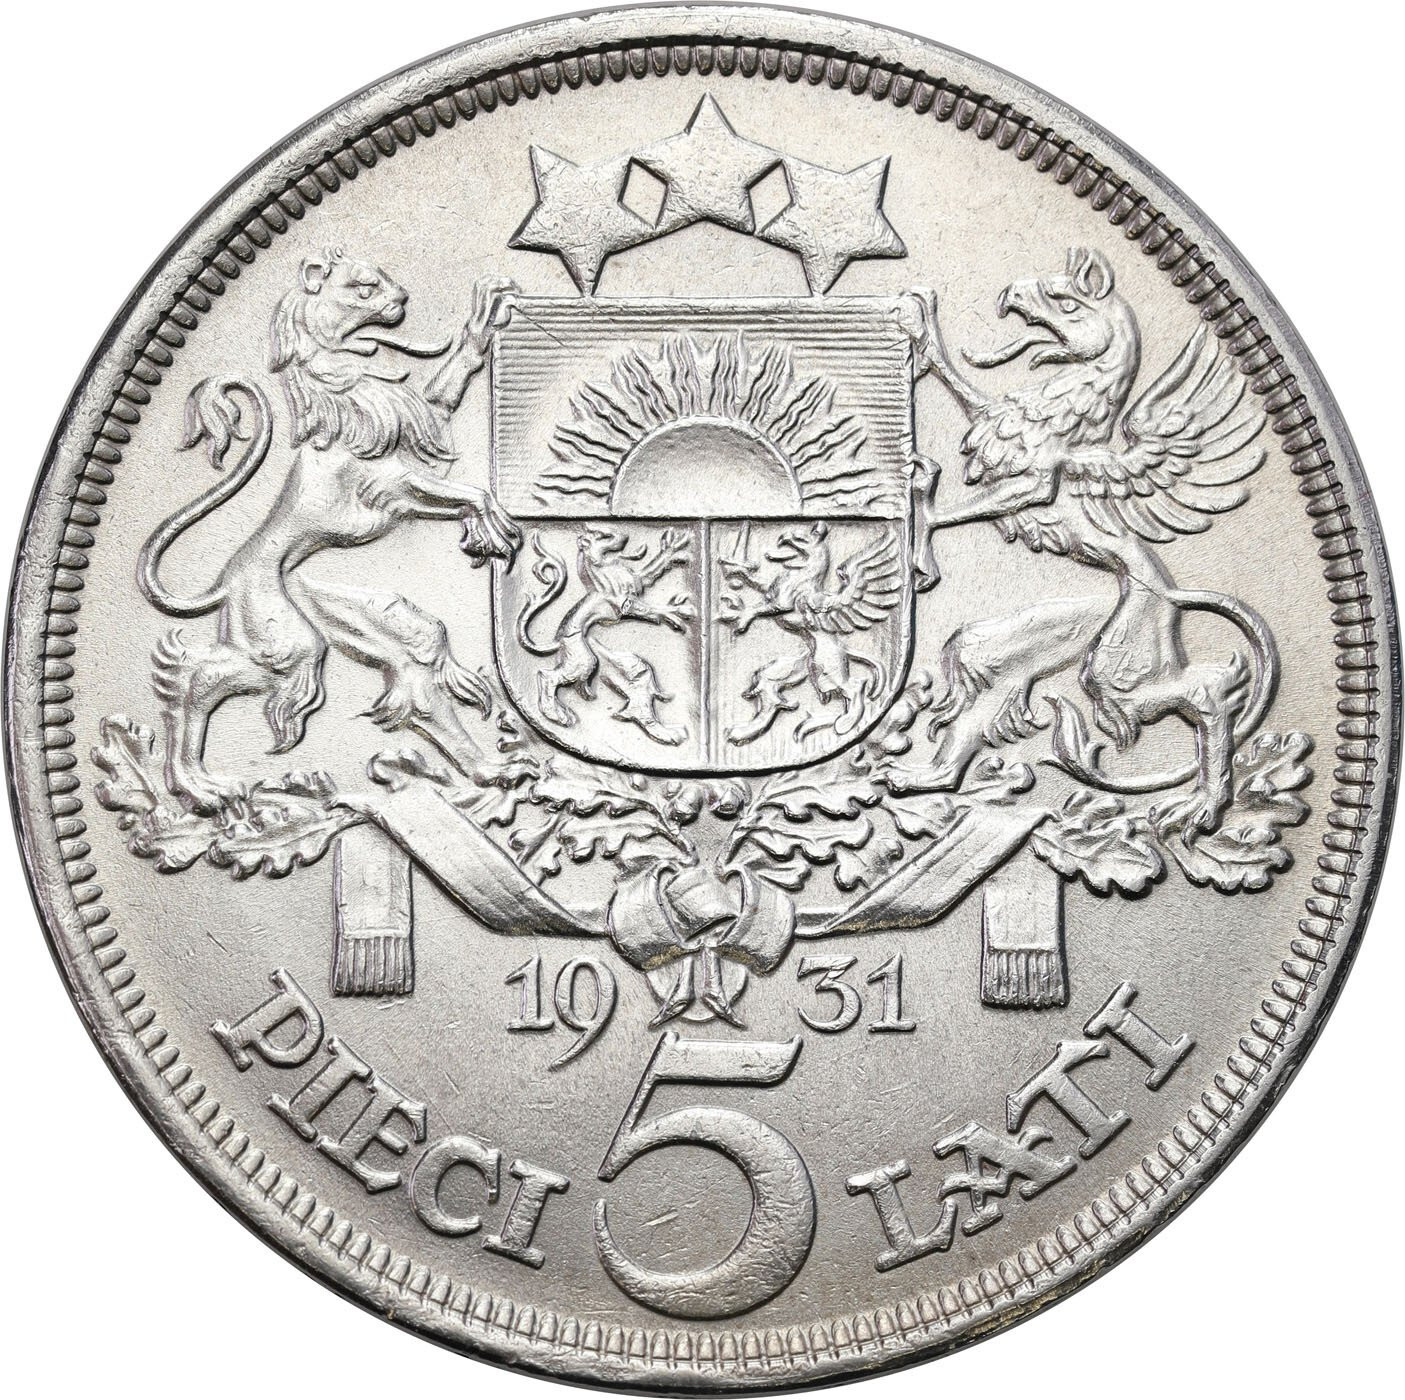 Łotwa. 5 lati 1931 – PIĘKNE